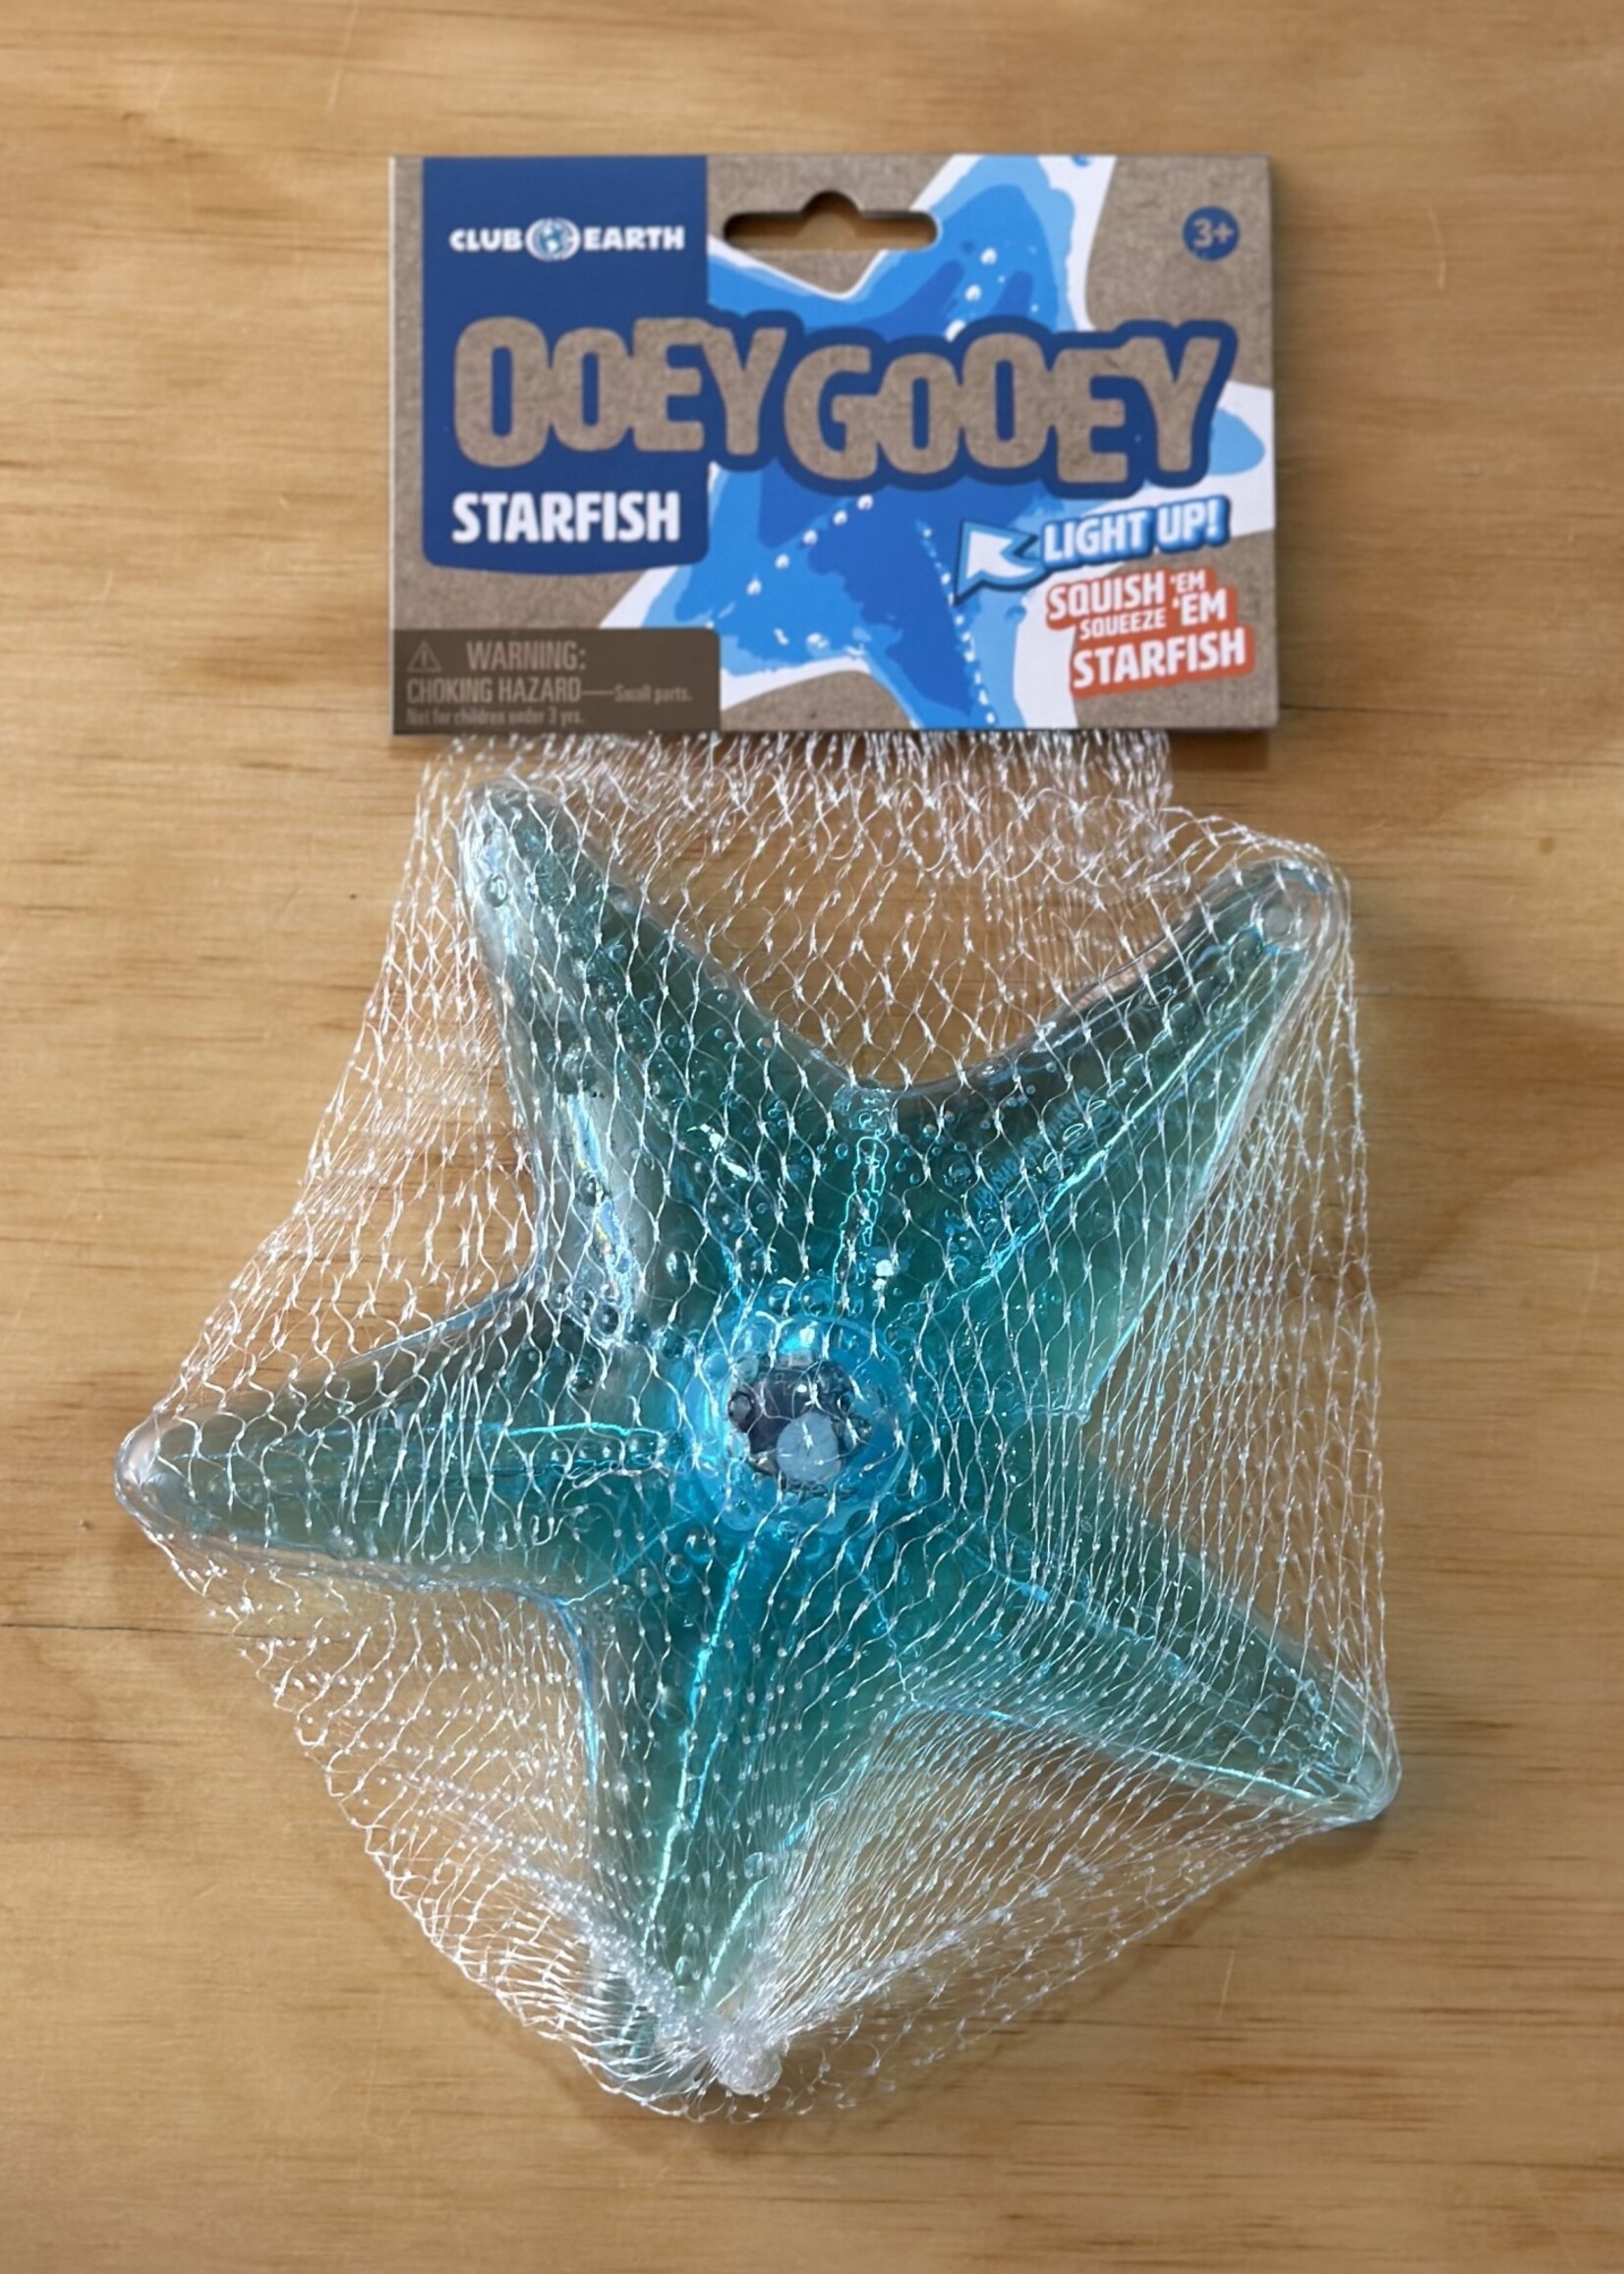 Ooey Gooey Starfish